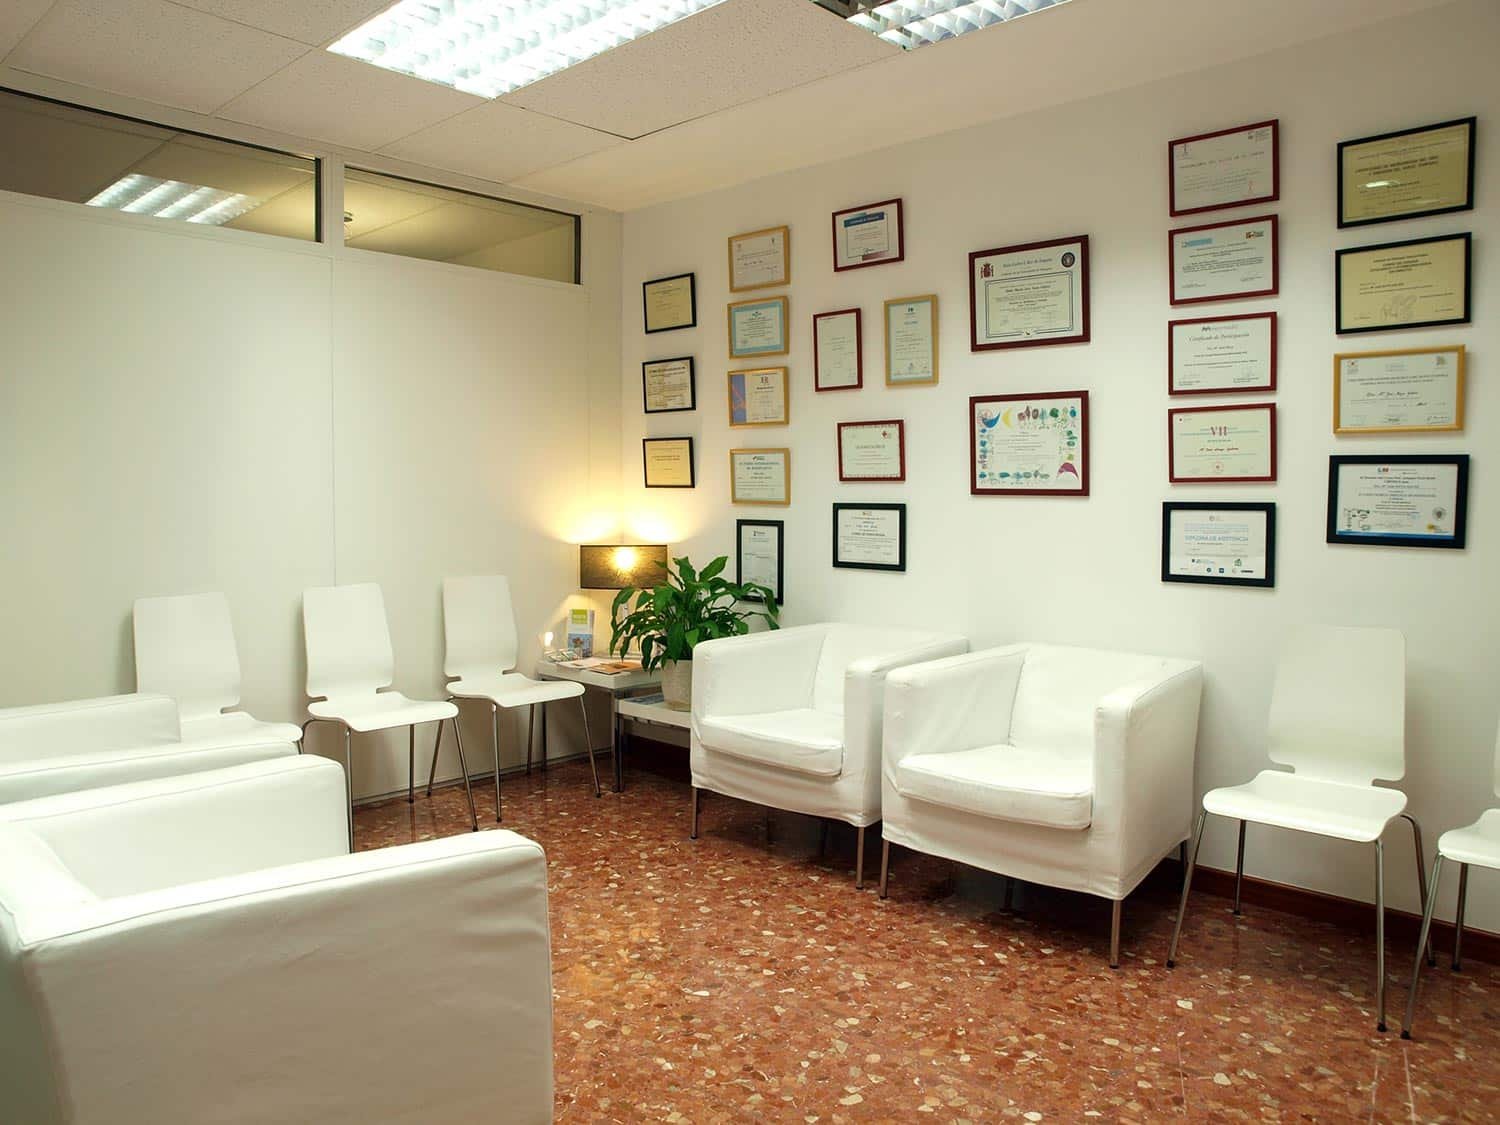 Sala de espera de la consulta